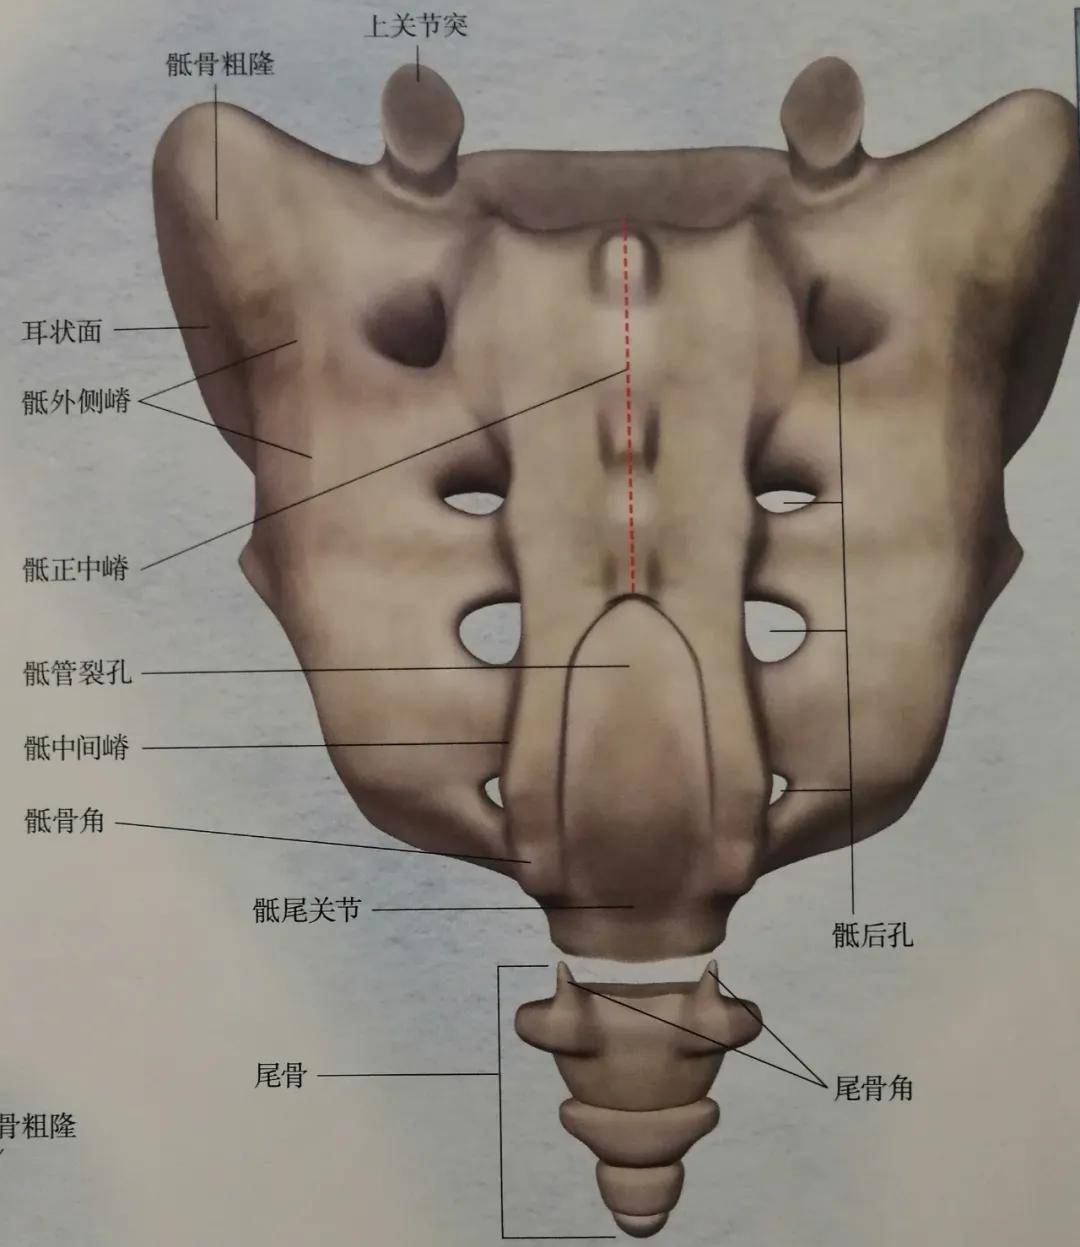 图片来源:《骨盆解剖及功能训练图解》在脊柱的最下方就是骶椎和尾椎